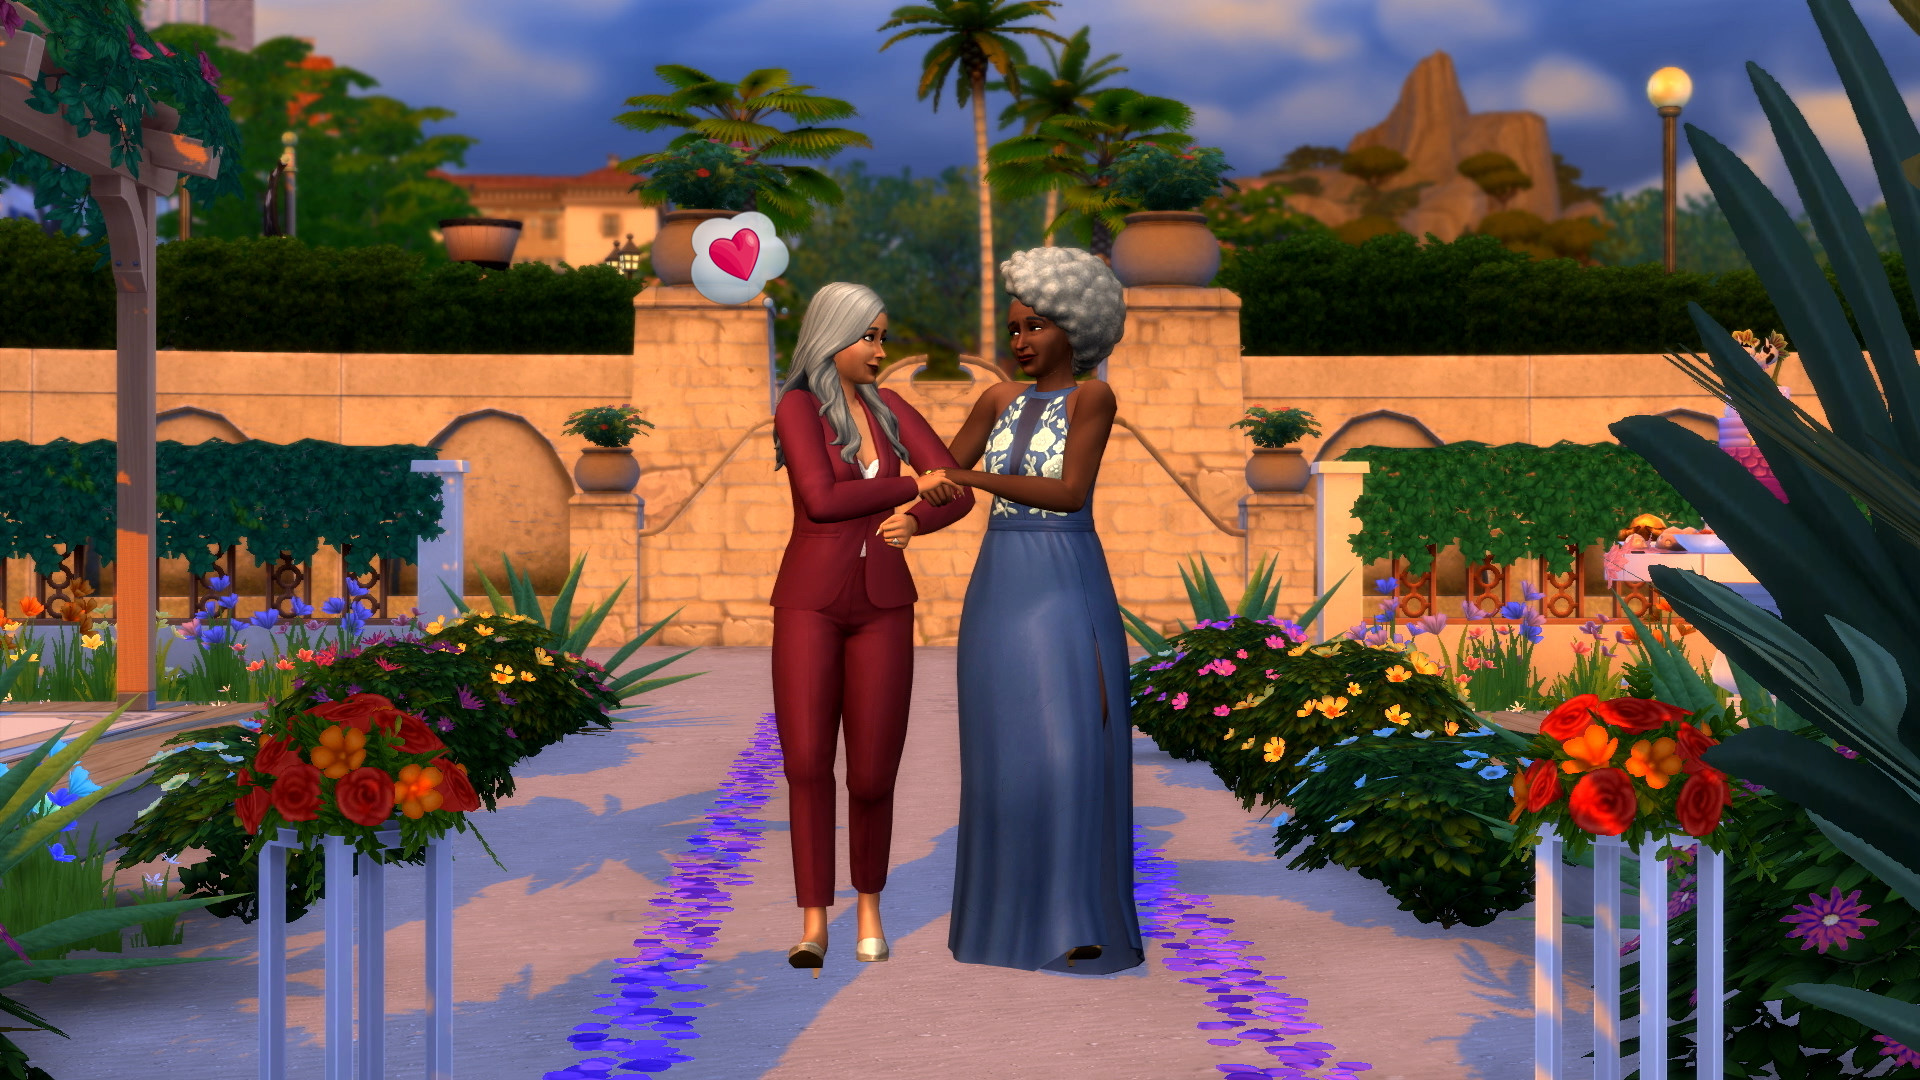  Изображение однополой пары из рекламного материала The Sims 4: Свадебные истории